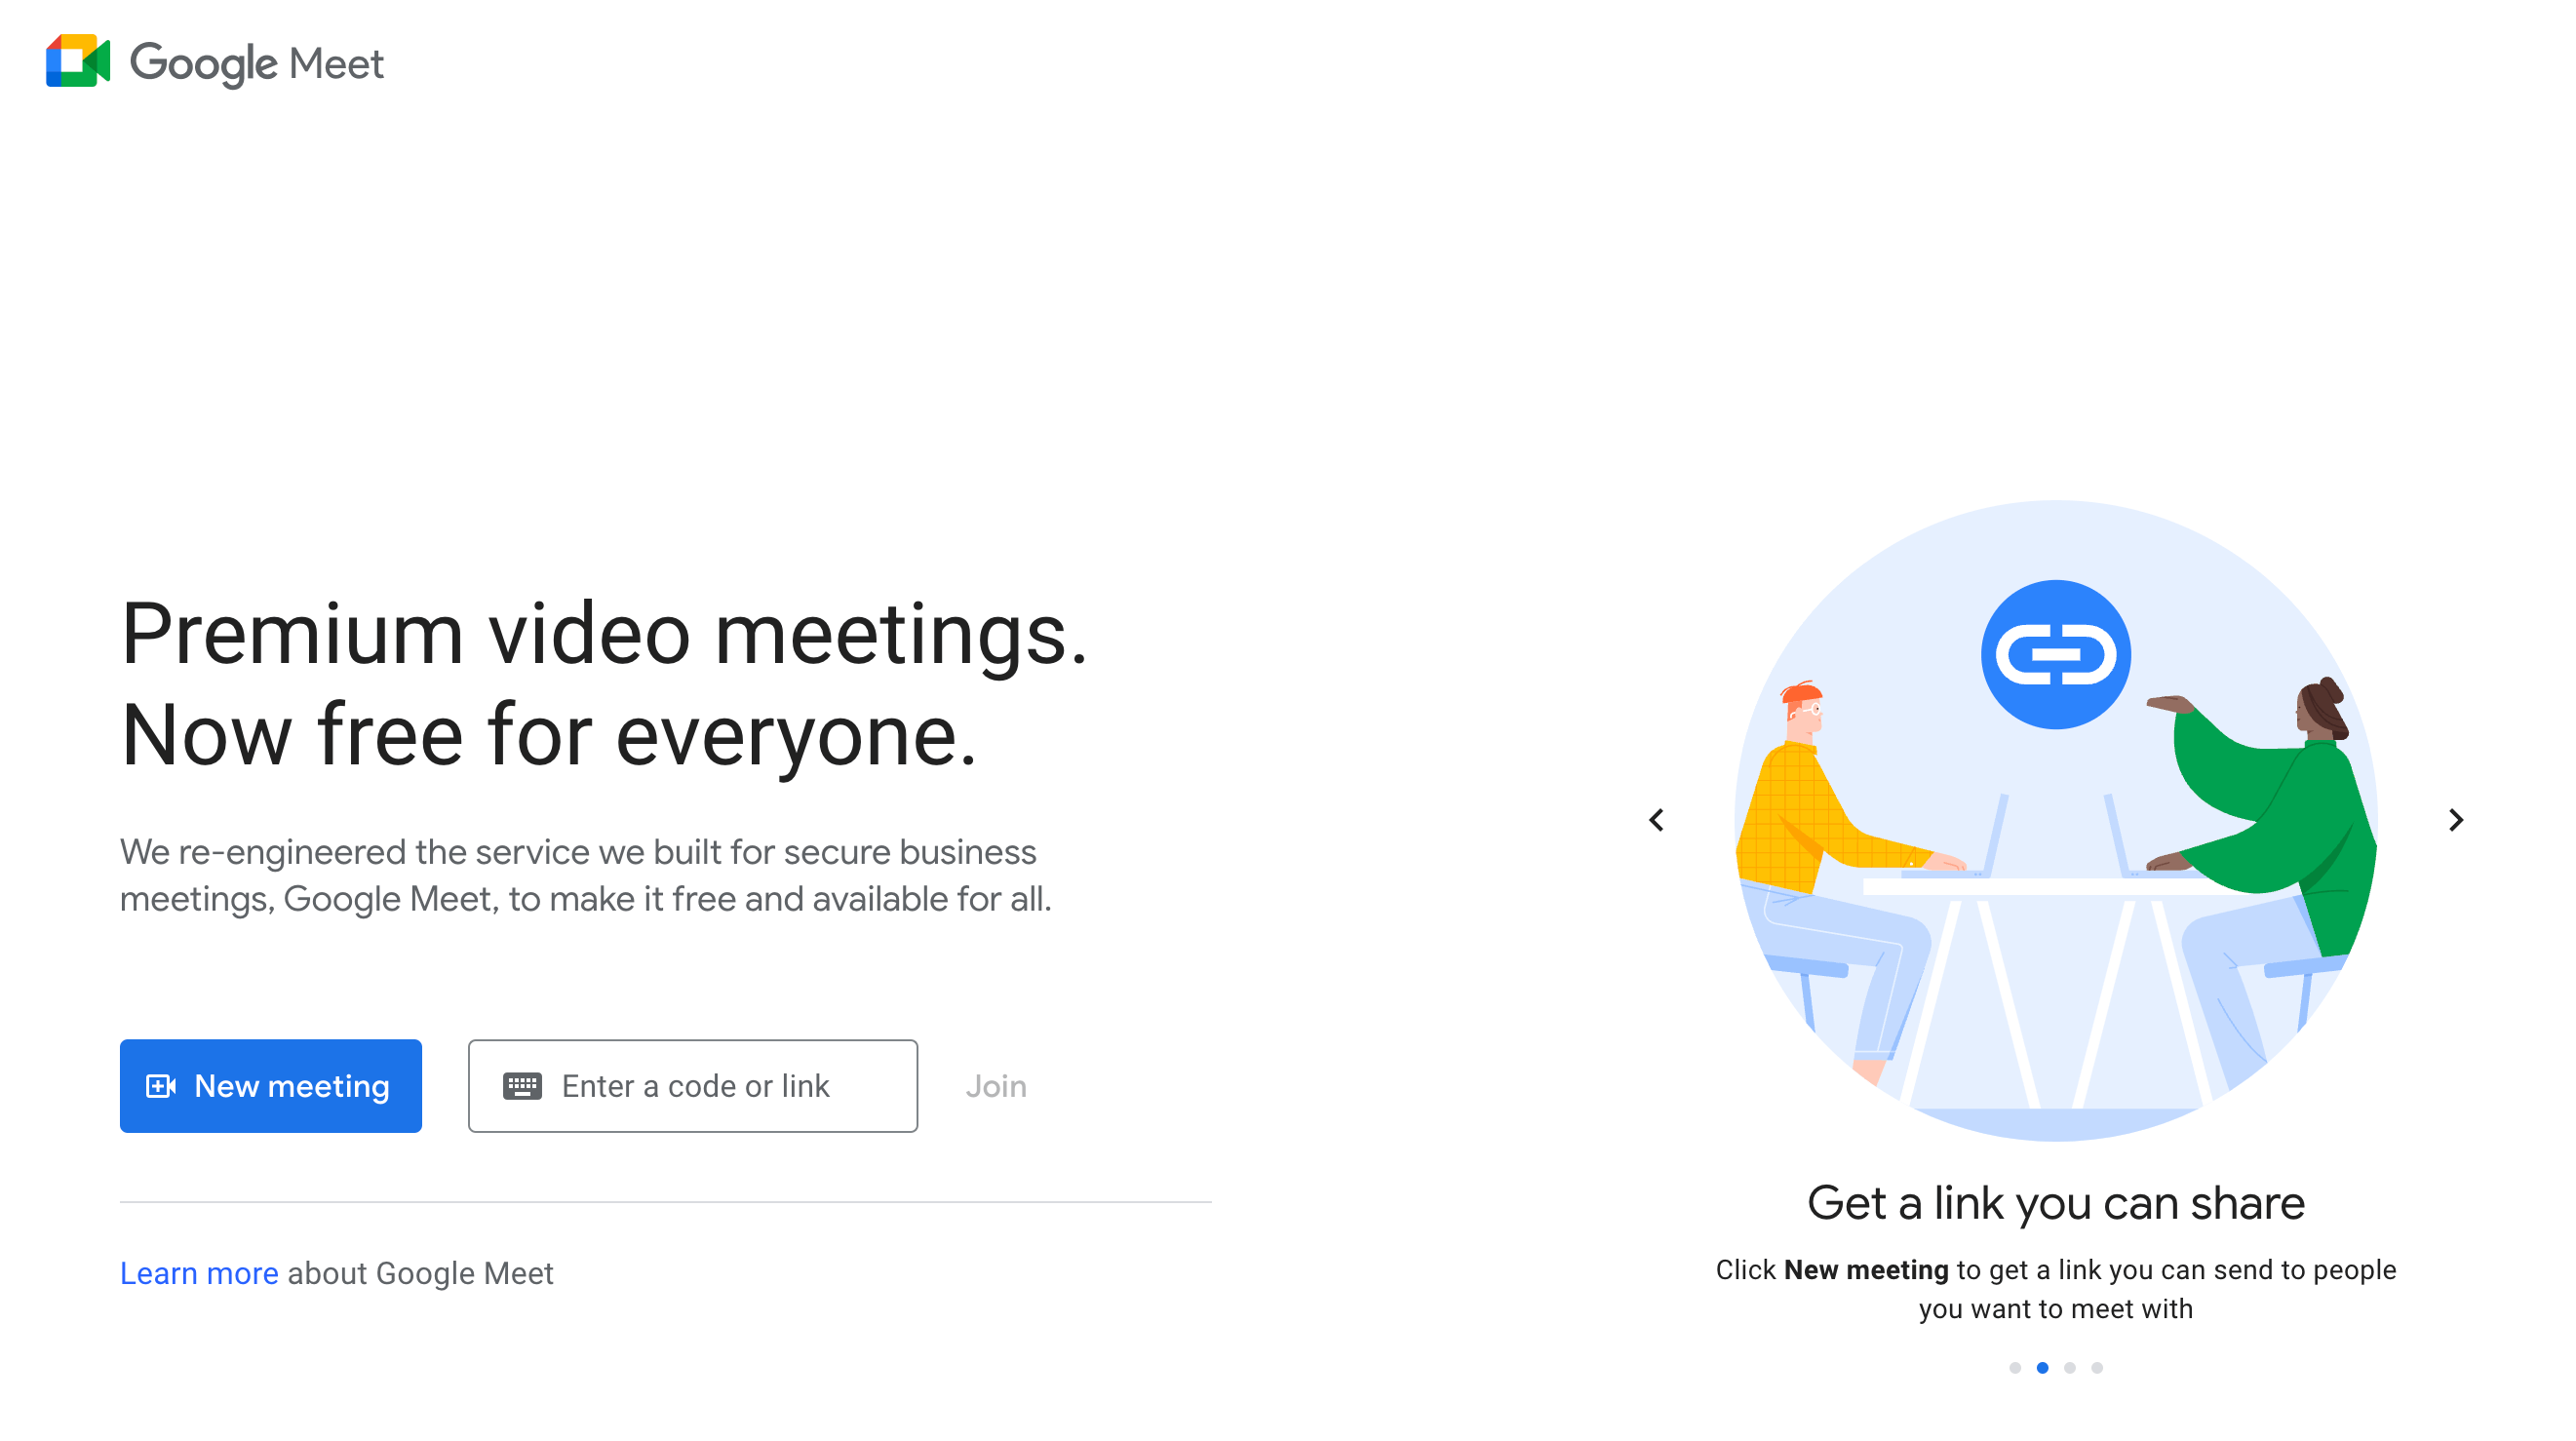 Google Meet homepage: Premium video meetings. Now free for everyone.